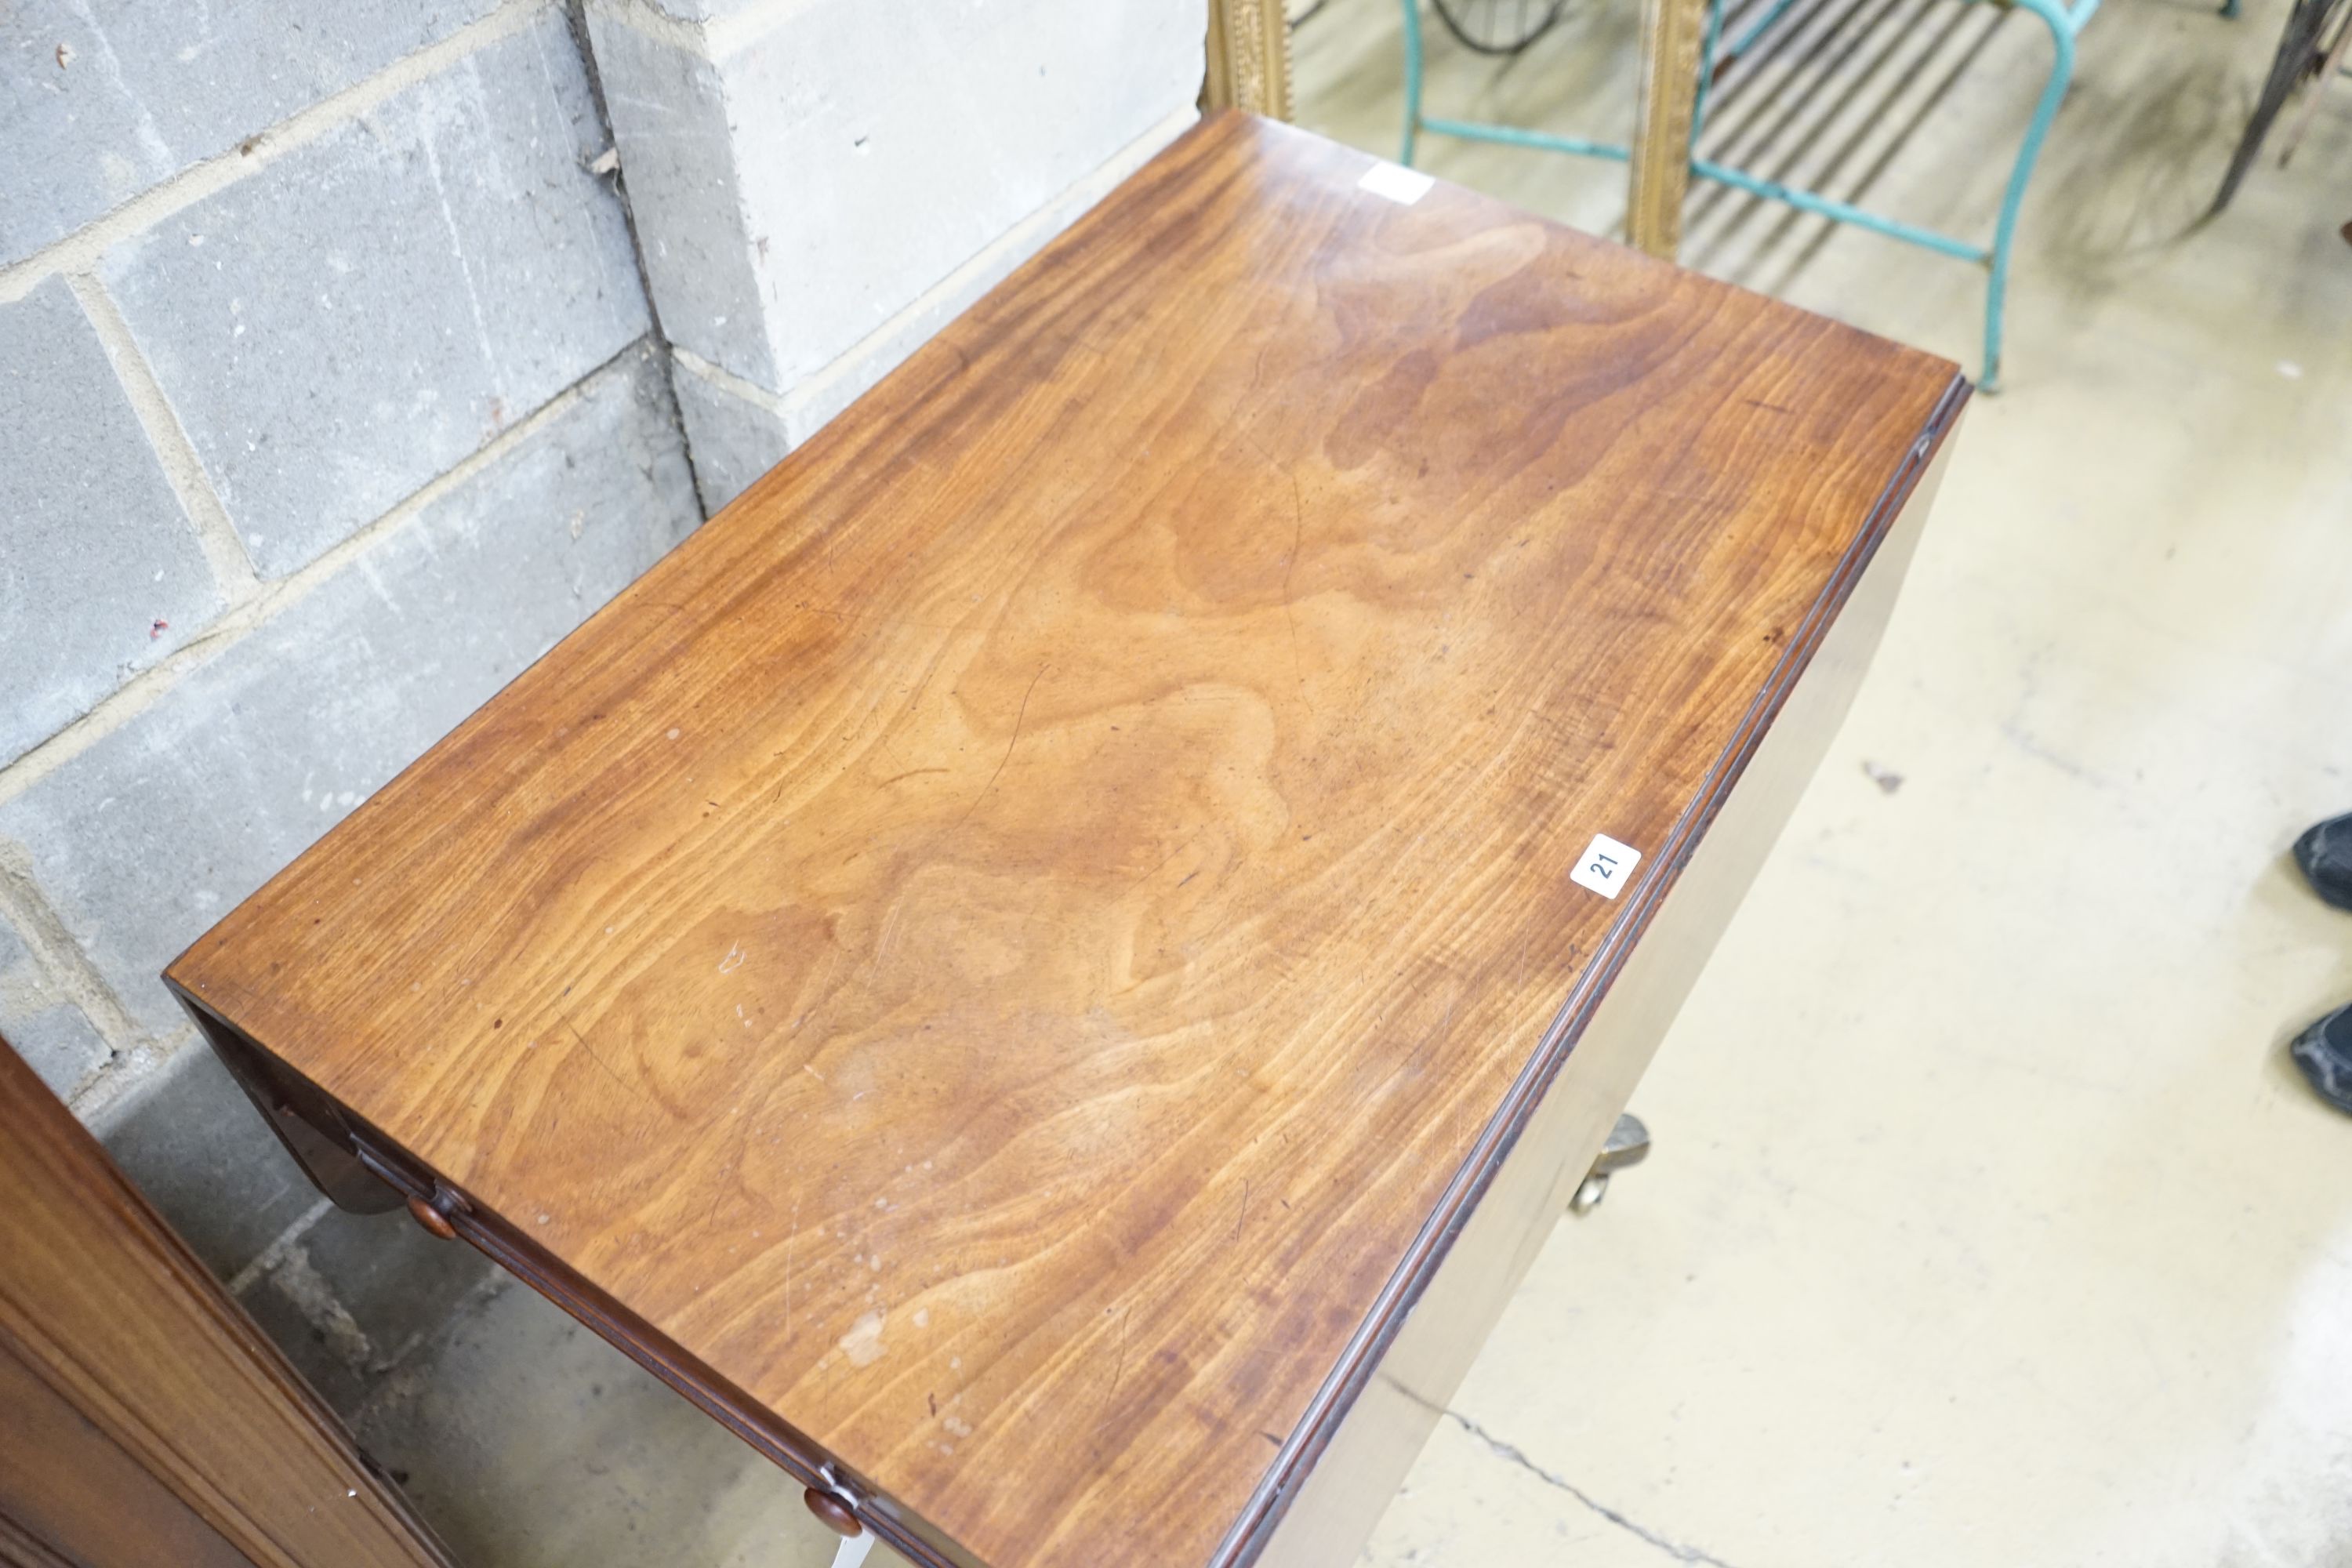 A Regency mahogany Pembroke breakfast table, width 86cm, depth 55cm, height 71cm